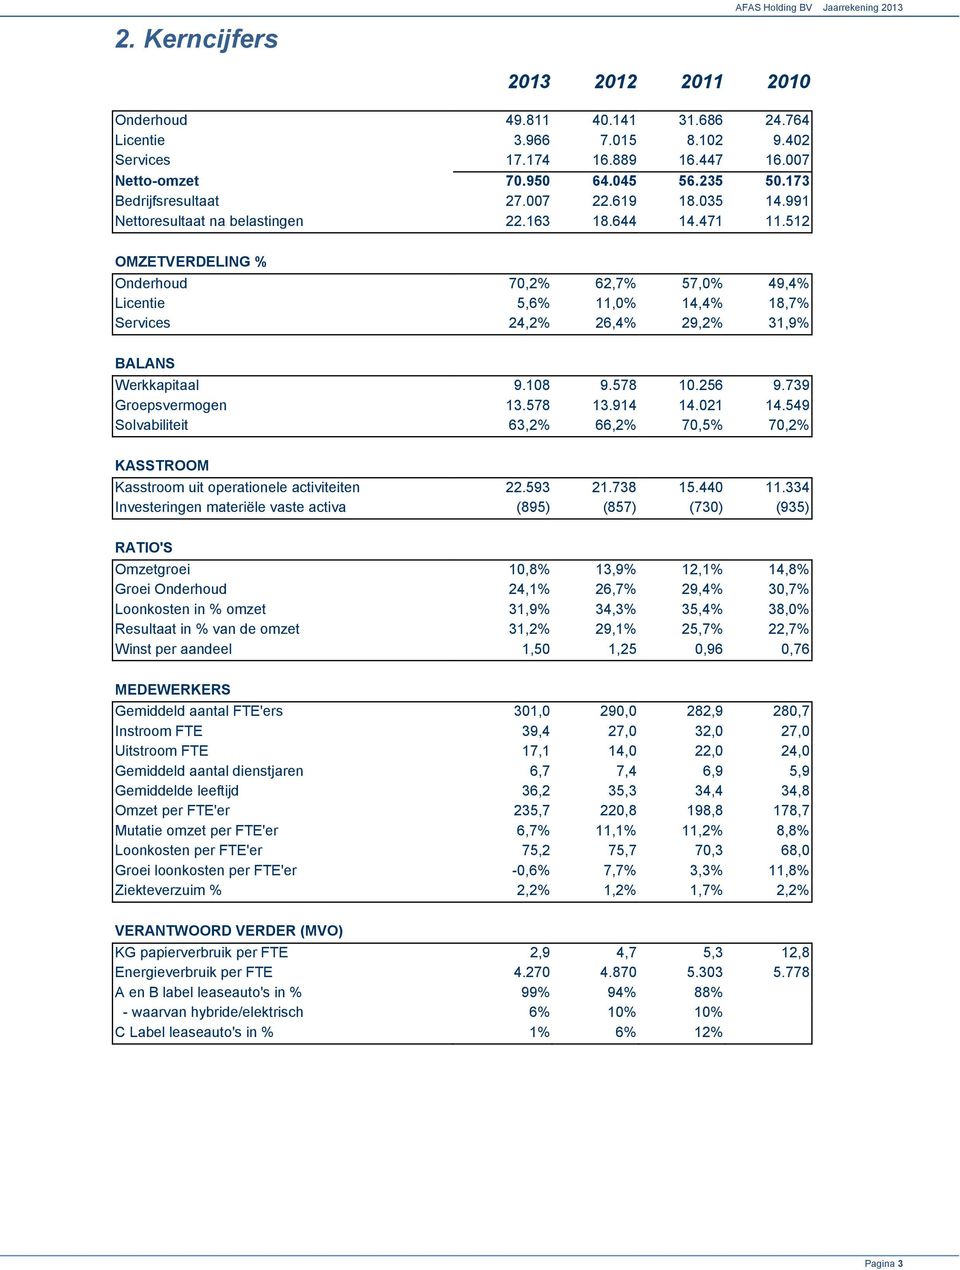 512 OMZETVERDELING % Onderhoud 70,2% 62,7% 57,0% 49,4% Licentie 5,6% 11,0% 14,4% 18,7% Services 24,2% 26,4% 29,2% 31,9% BALANS Werkkapitaal 9.108 9.578 10.256 9.739 Groepsvermogen 13.578 13.914 14.